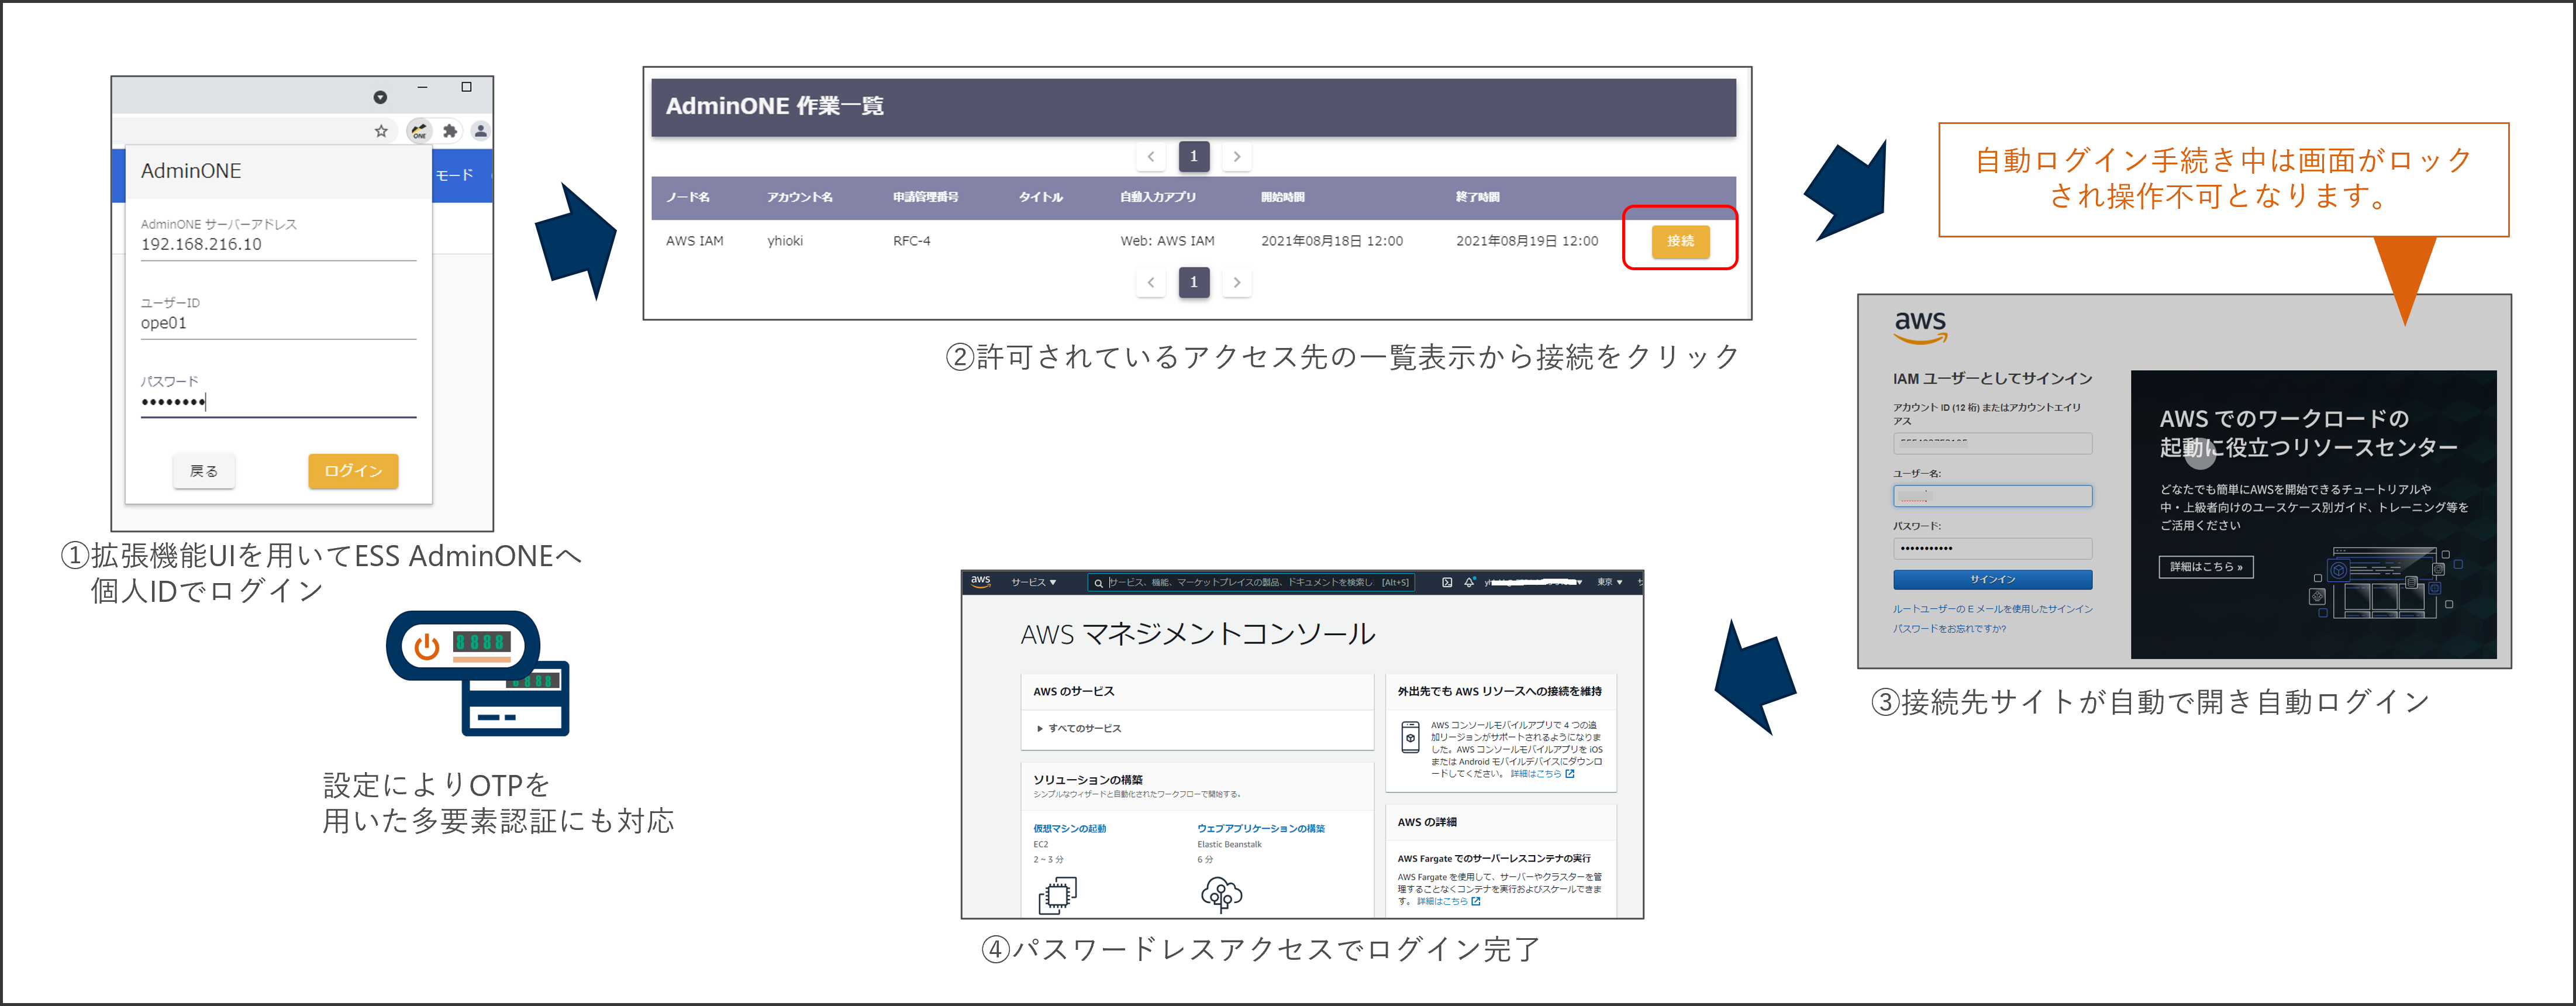 「OA for Browser」の動作イメージ（AWSマネジメントコンソールへのパスワードレスアクセスの例）